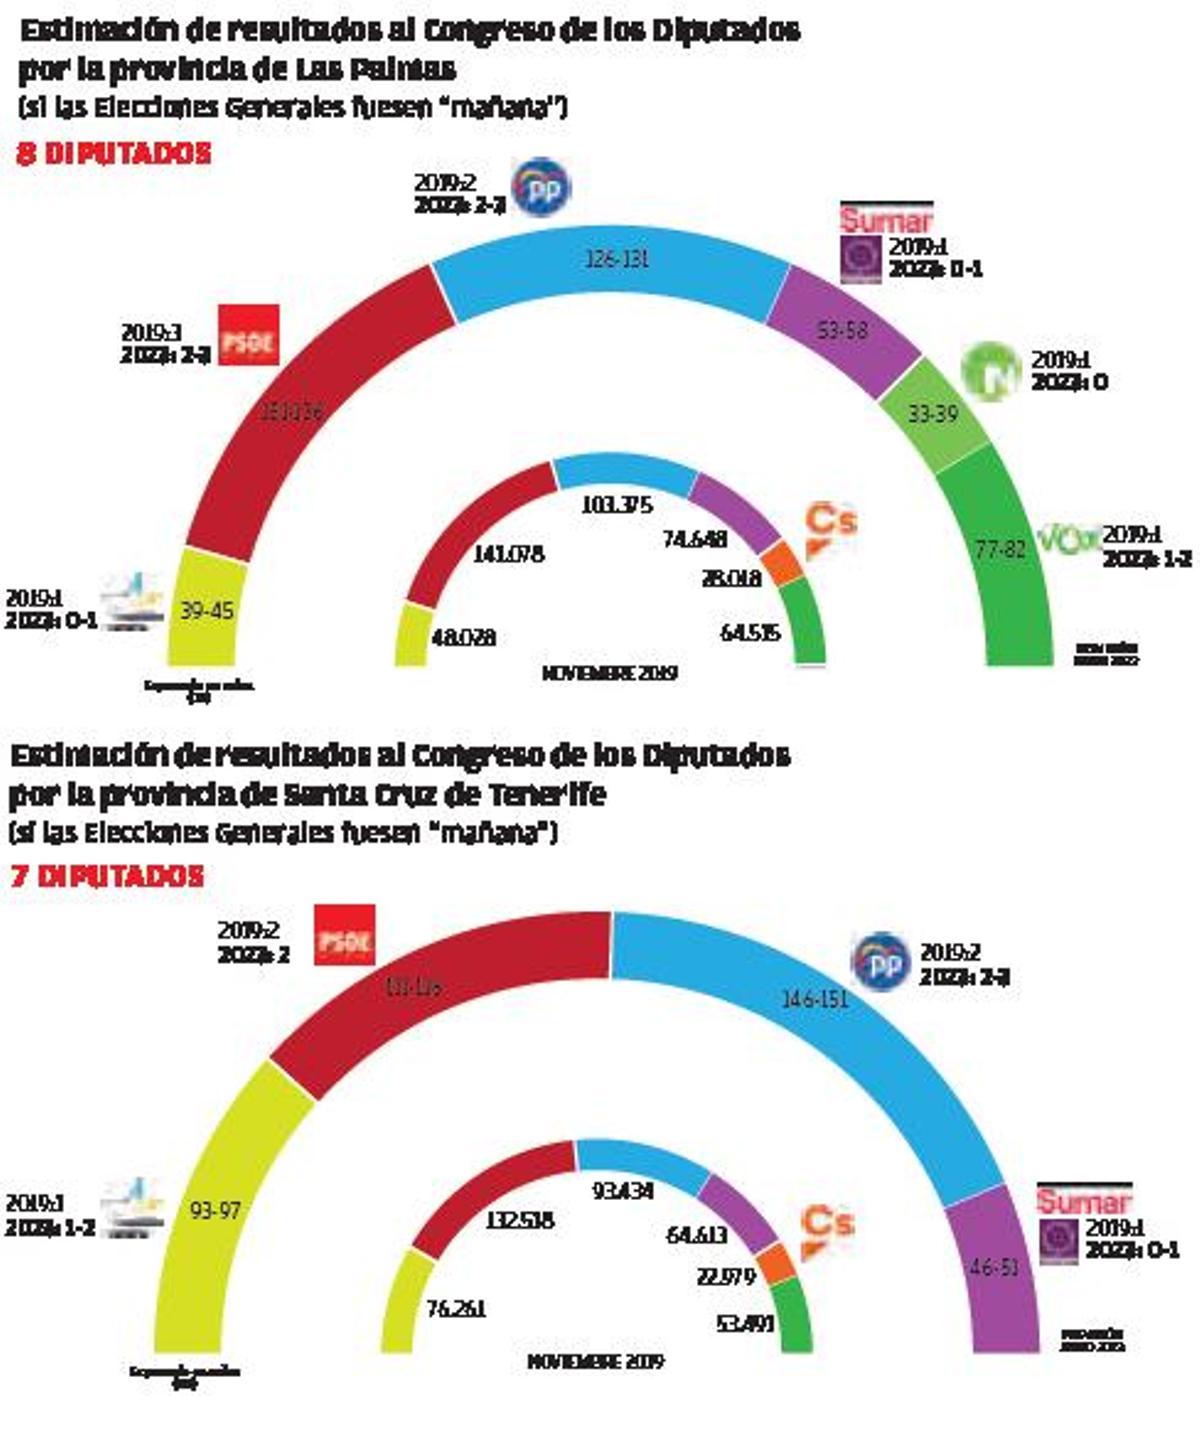 Estimación de resultados al Congreso de los Diputados por las provincias de Las Palmas y Santa Cruz de Tenerife